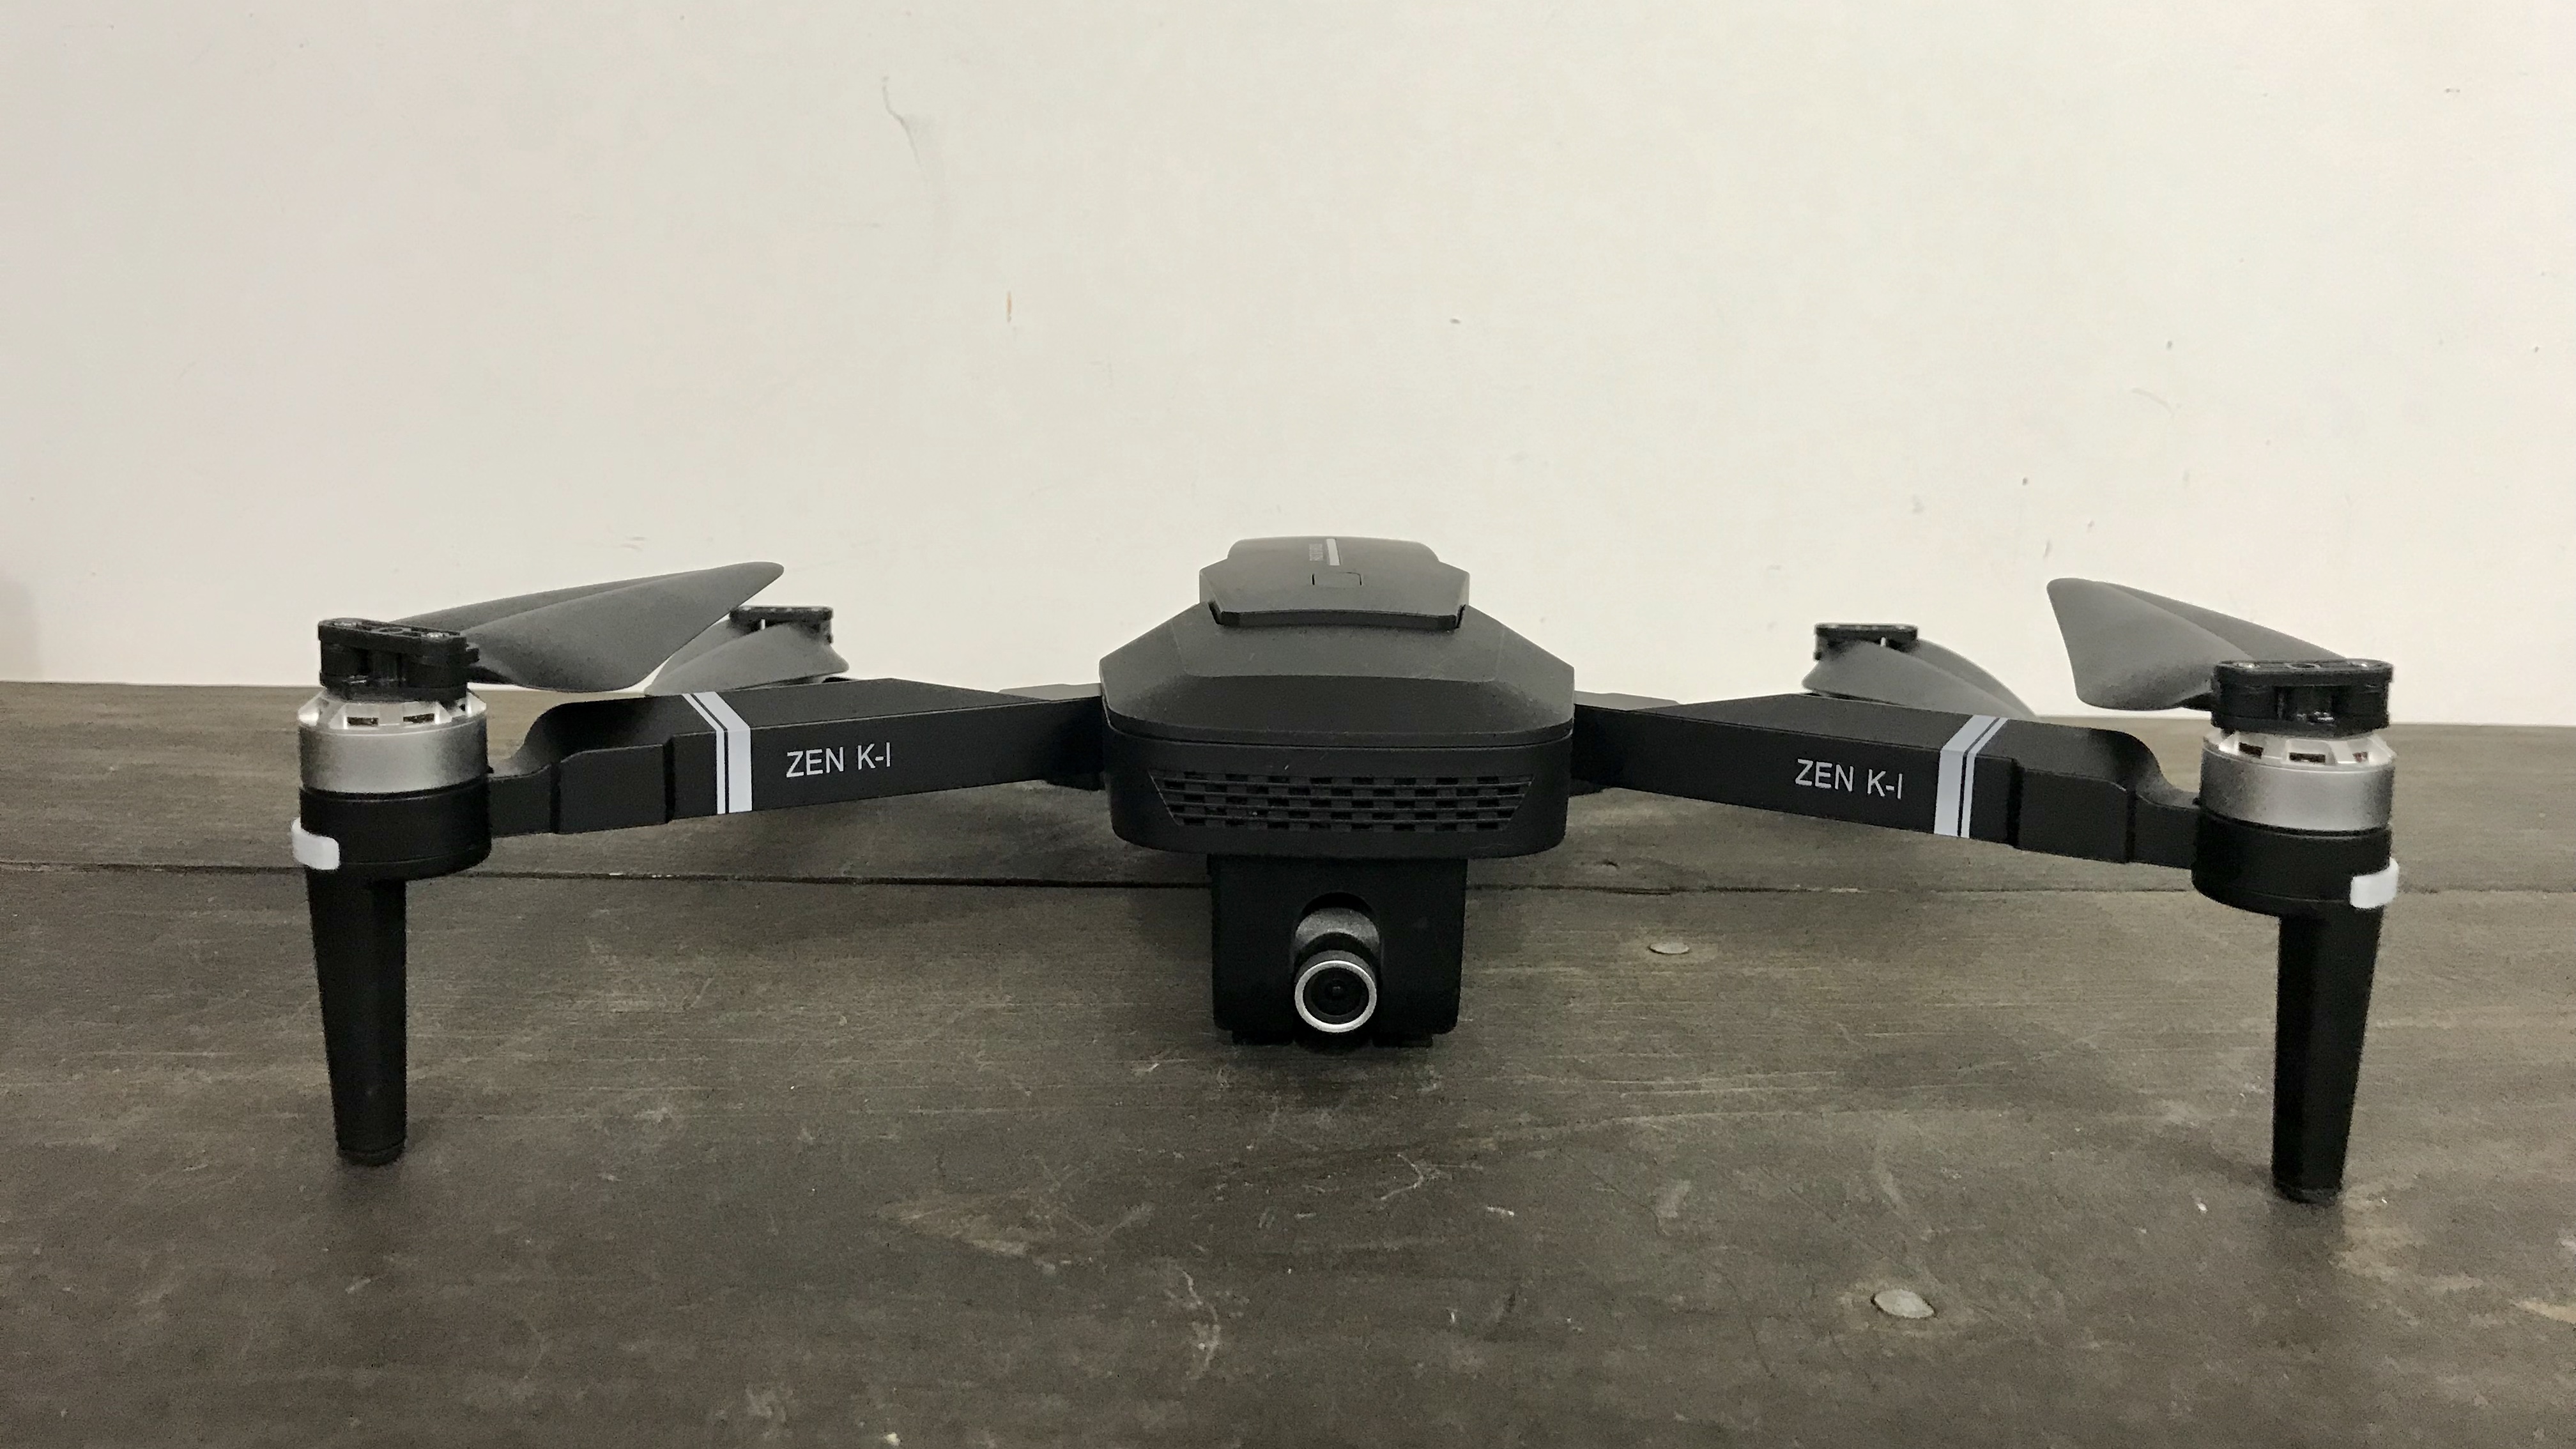 visuo gps drone zen k1